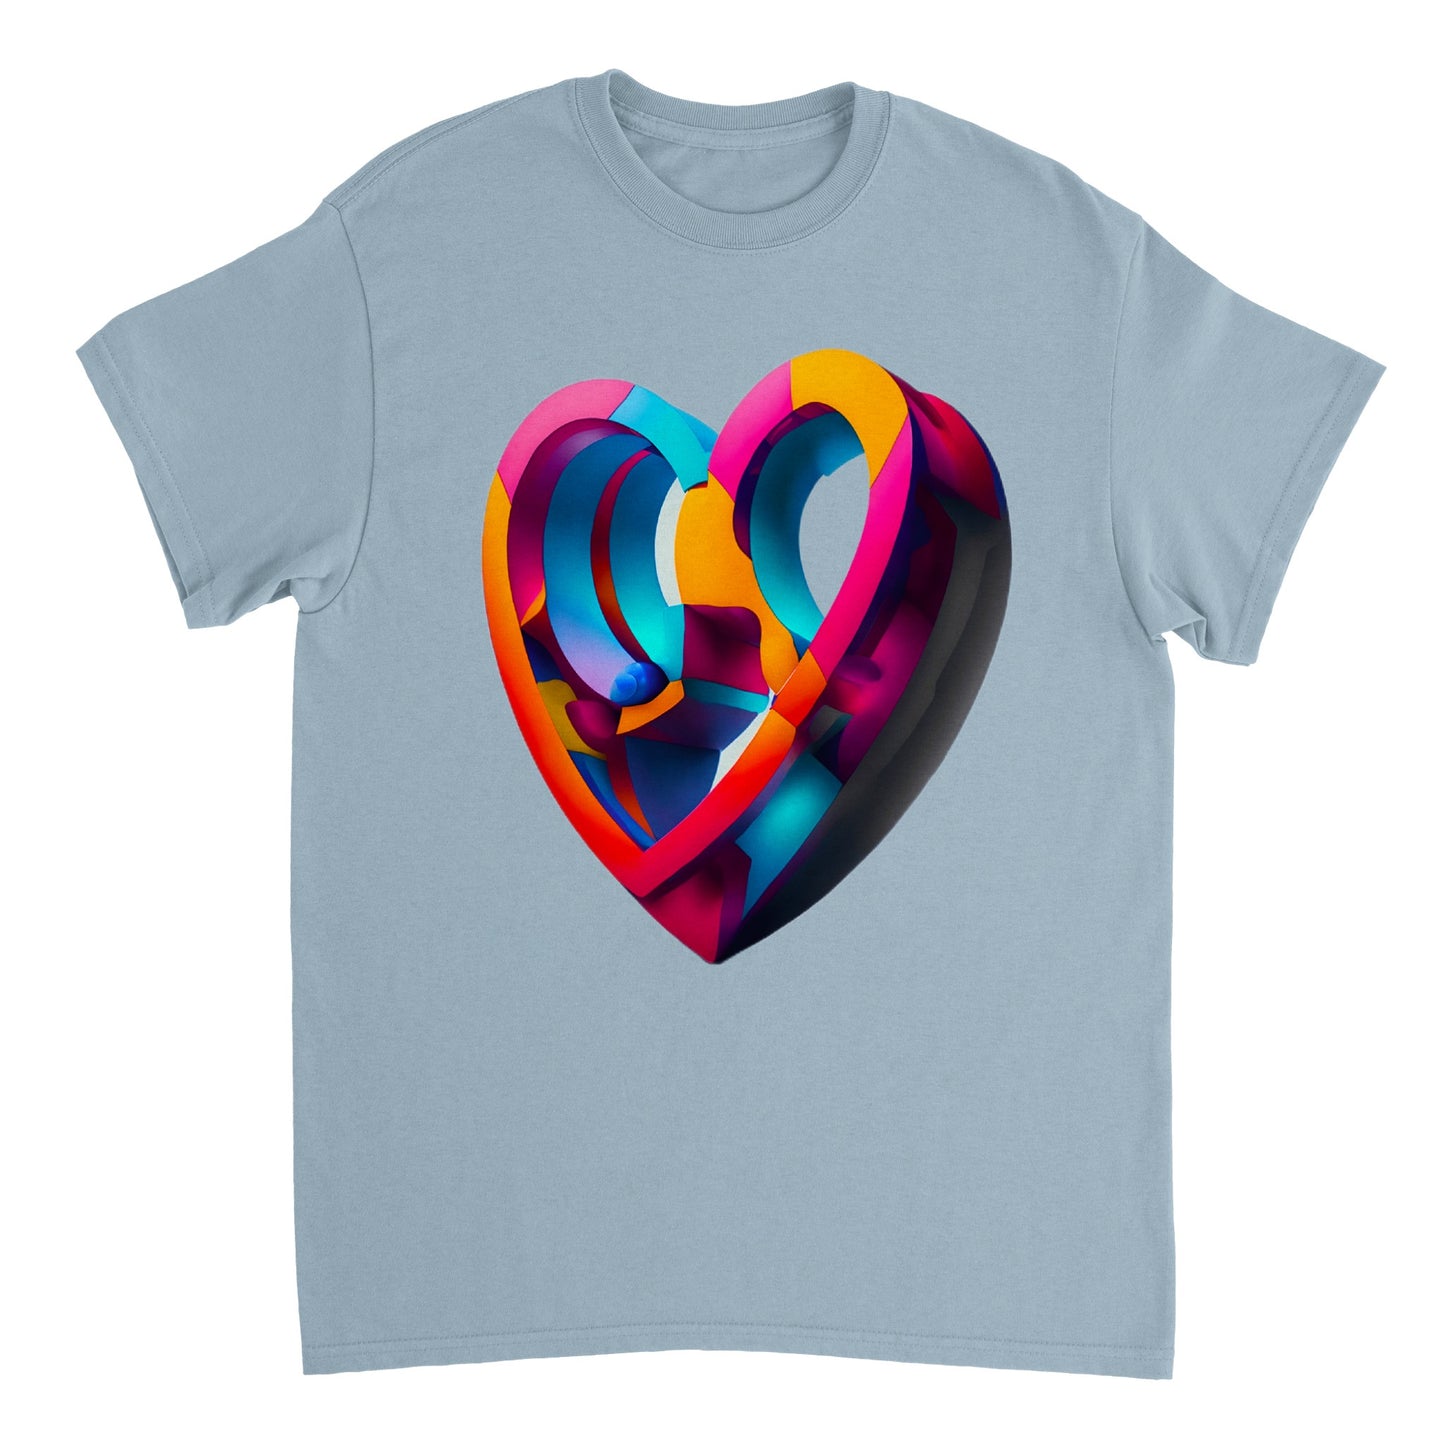 Love Heart - Heavyweight Unisex Crewneck T-shirt 11